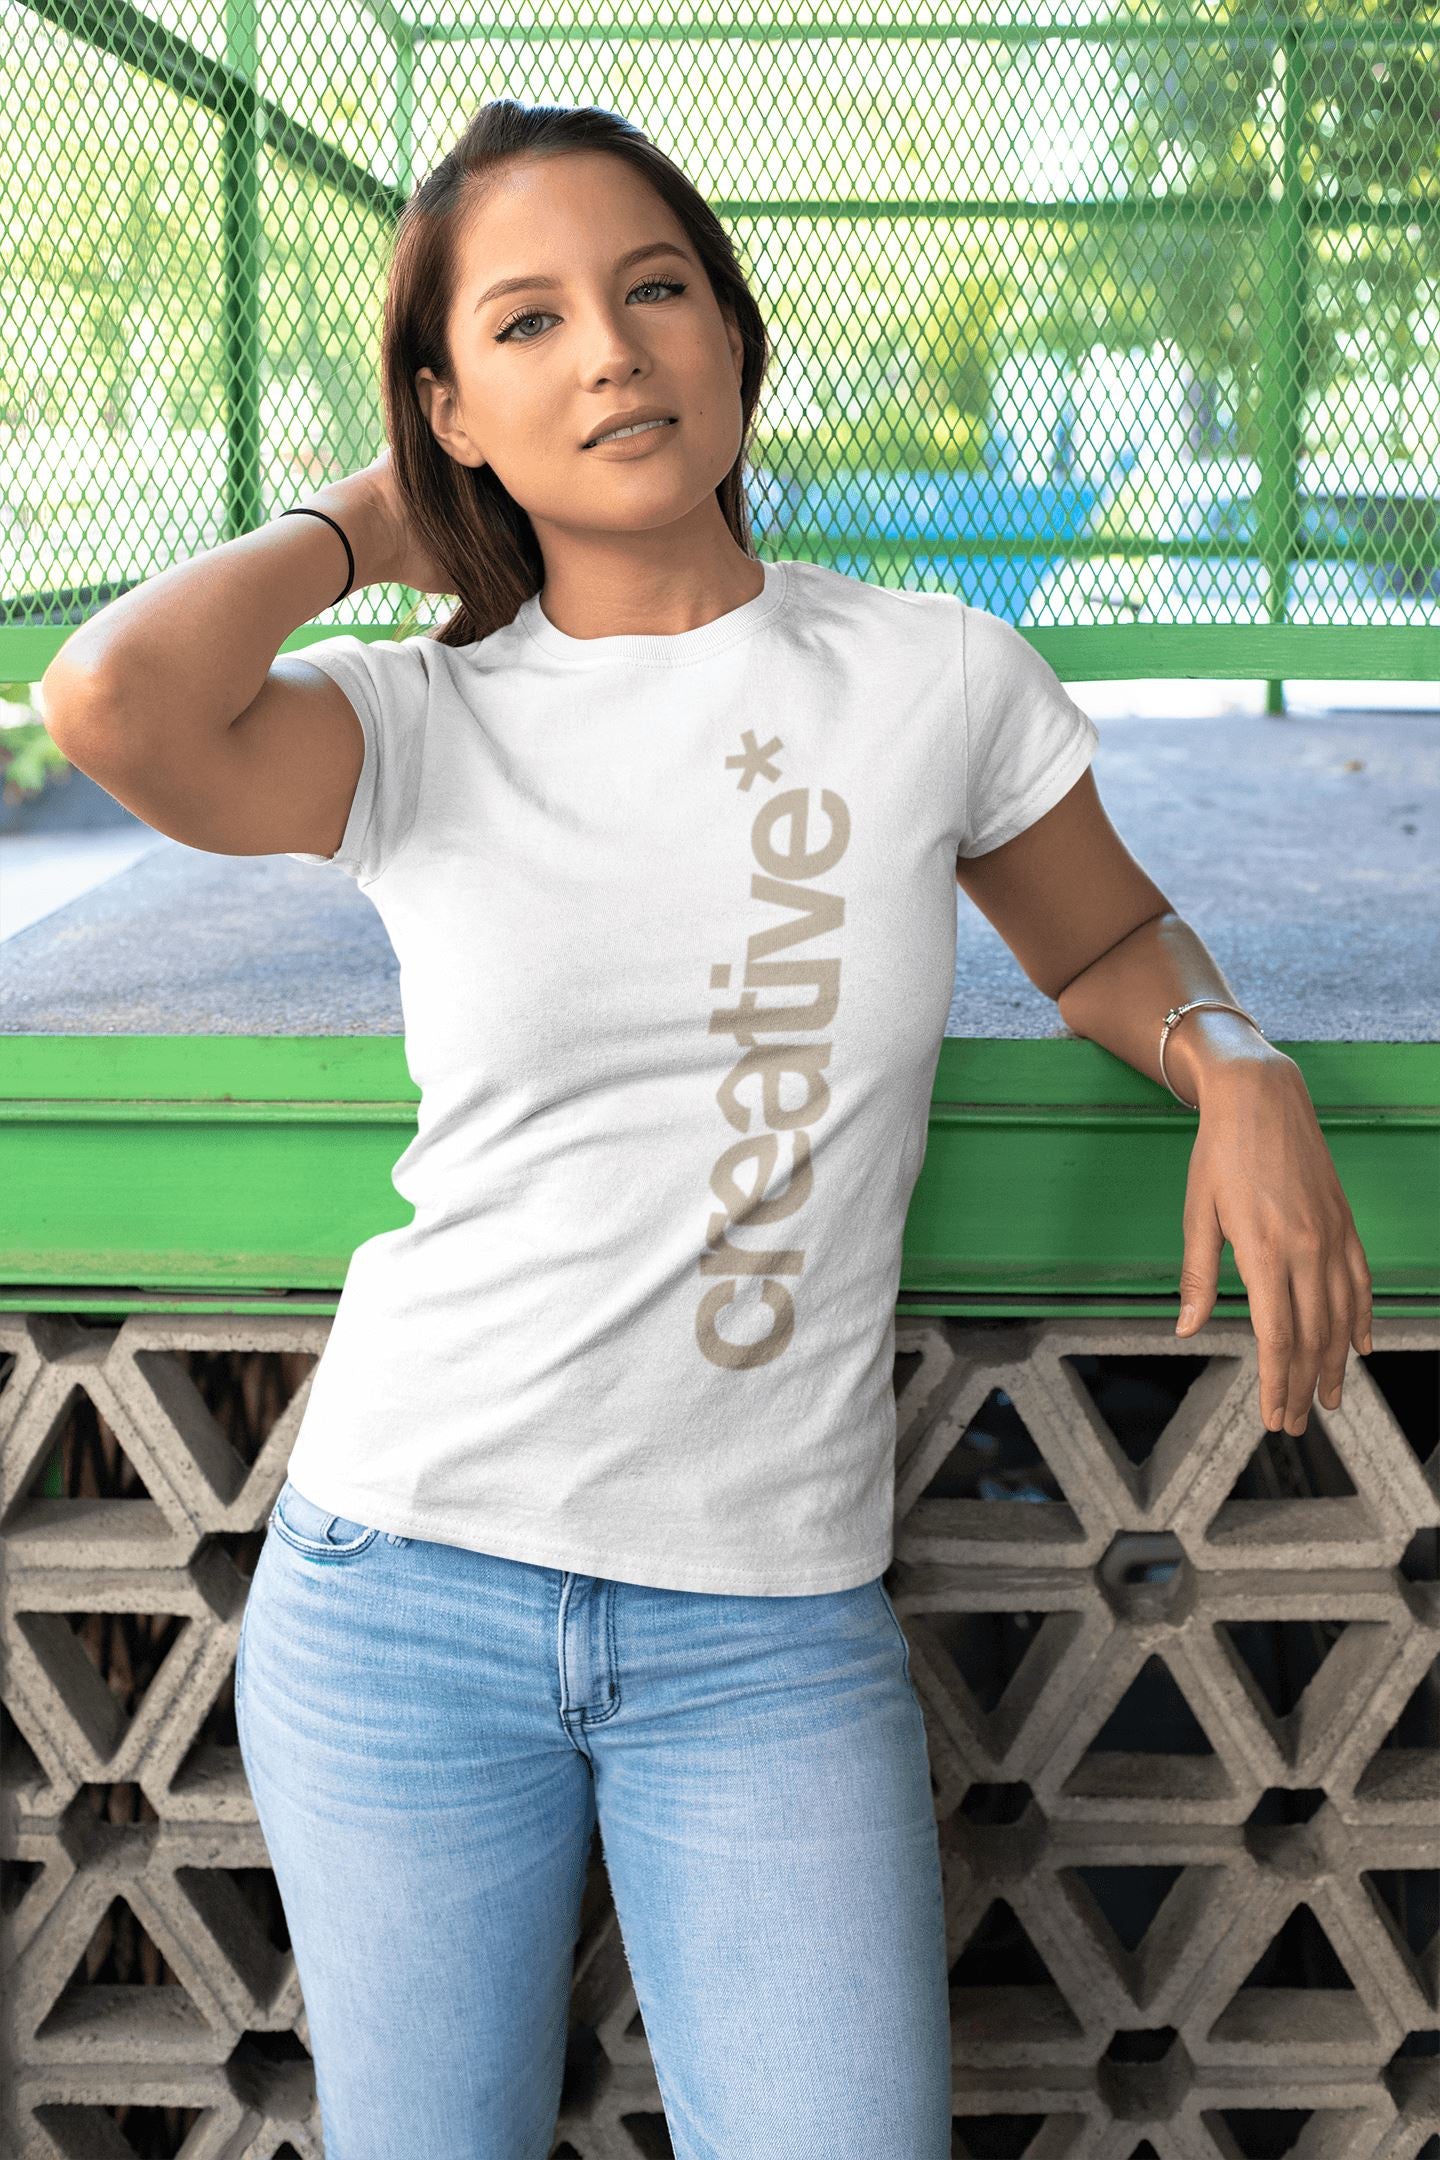 Creative Graphic Print Unisex T Shirt | Premium Design | Catch My Drift India - Catch My Drift India  clothing, female, general, made in india, shirt, t shirt, trending, tshirt, white